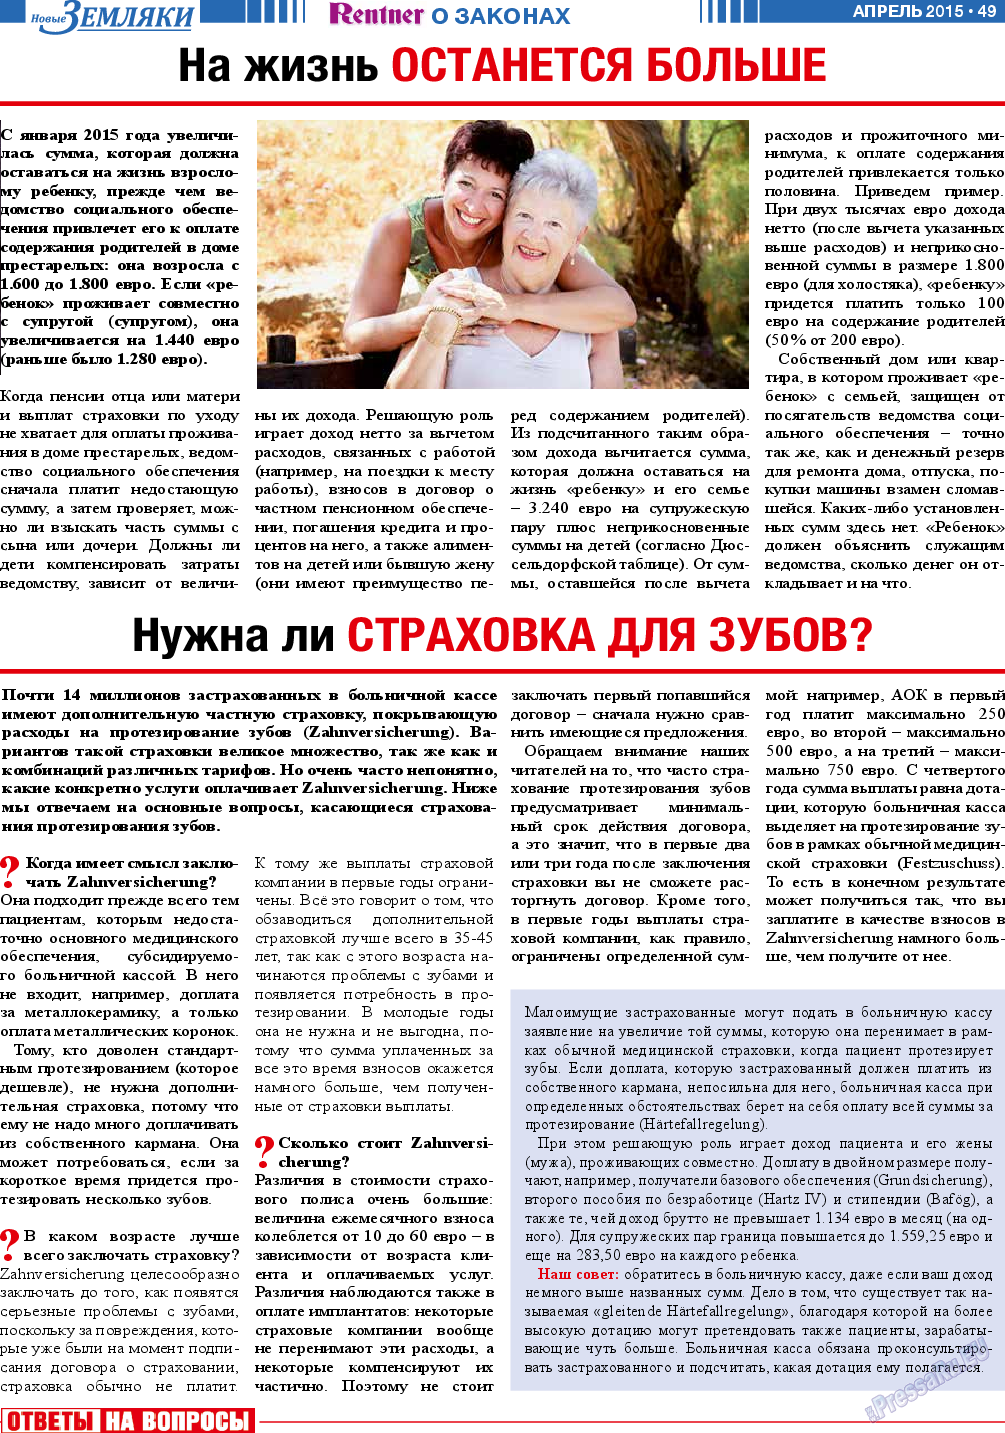 Новые Земляки, газета. 2015 №4 стр.49